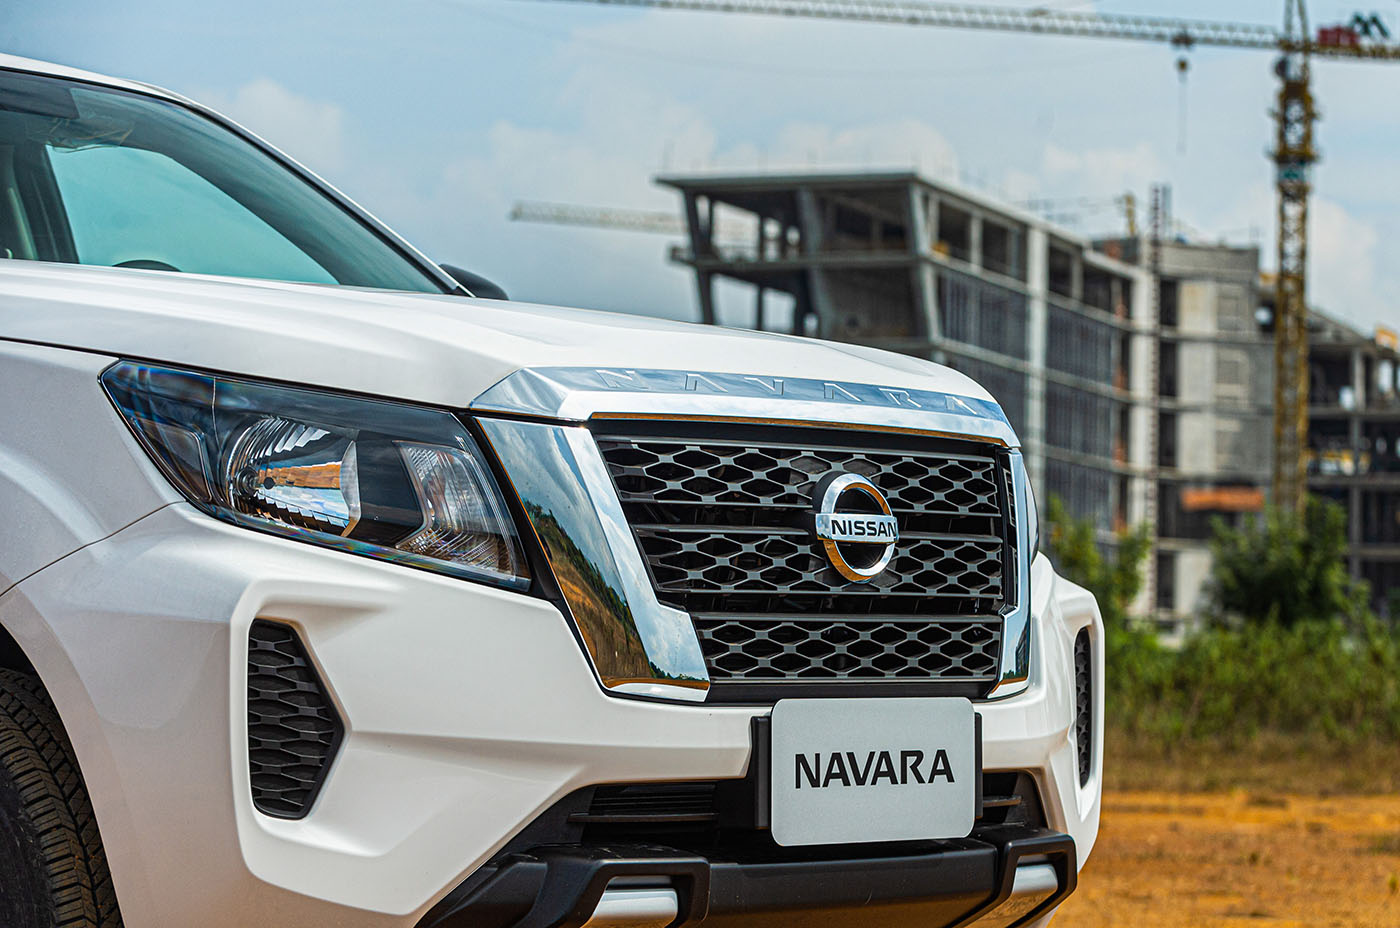 Nissan Navara 2.3 đã có thêm phiên bản EL dẫn động cầu sau, khởi điểm từ 699 triệu đồng